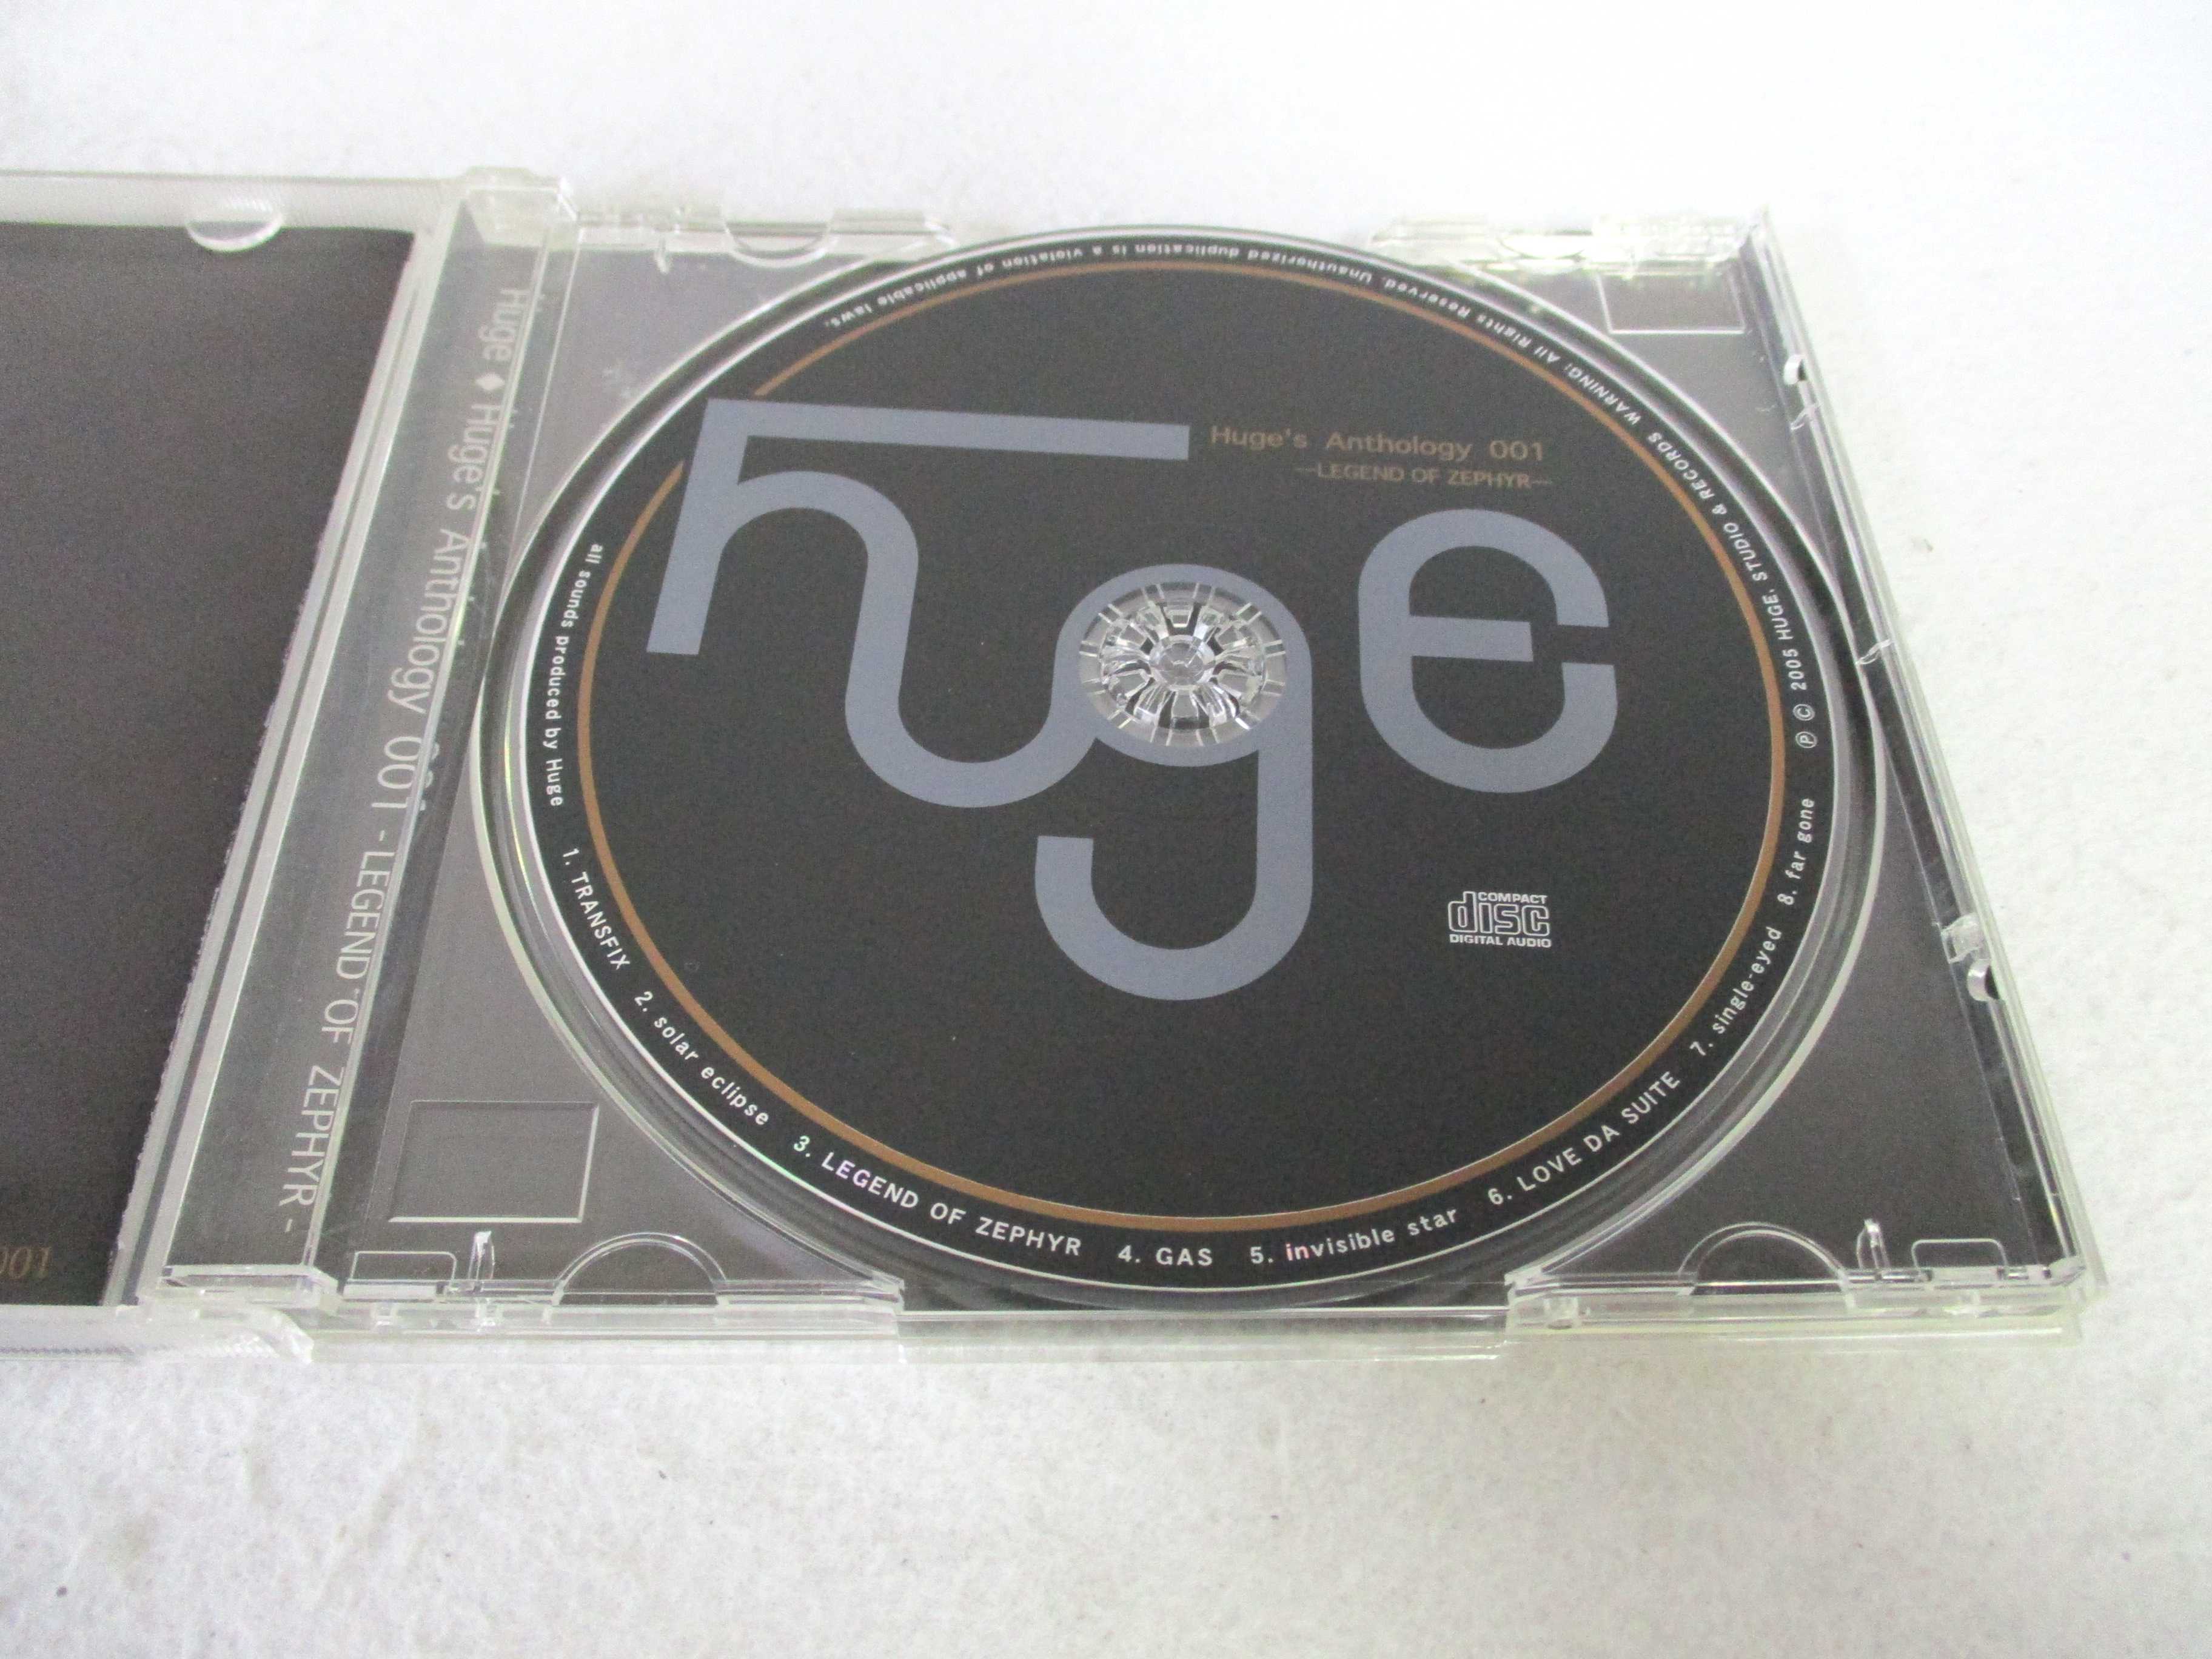 AC05661 【中古】 【CD】 Huge's Anthology 001 -LEGEND OF ZEPHYR-/Huge